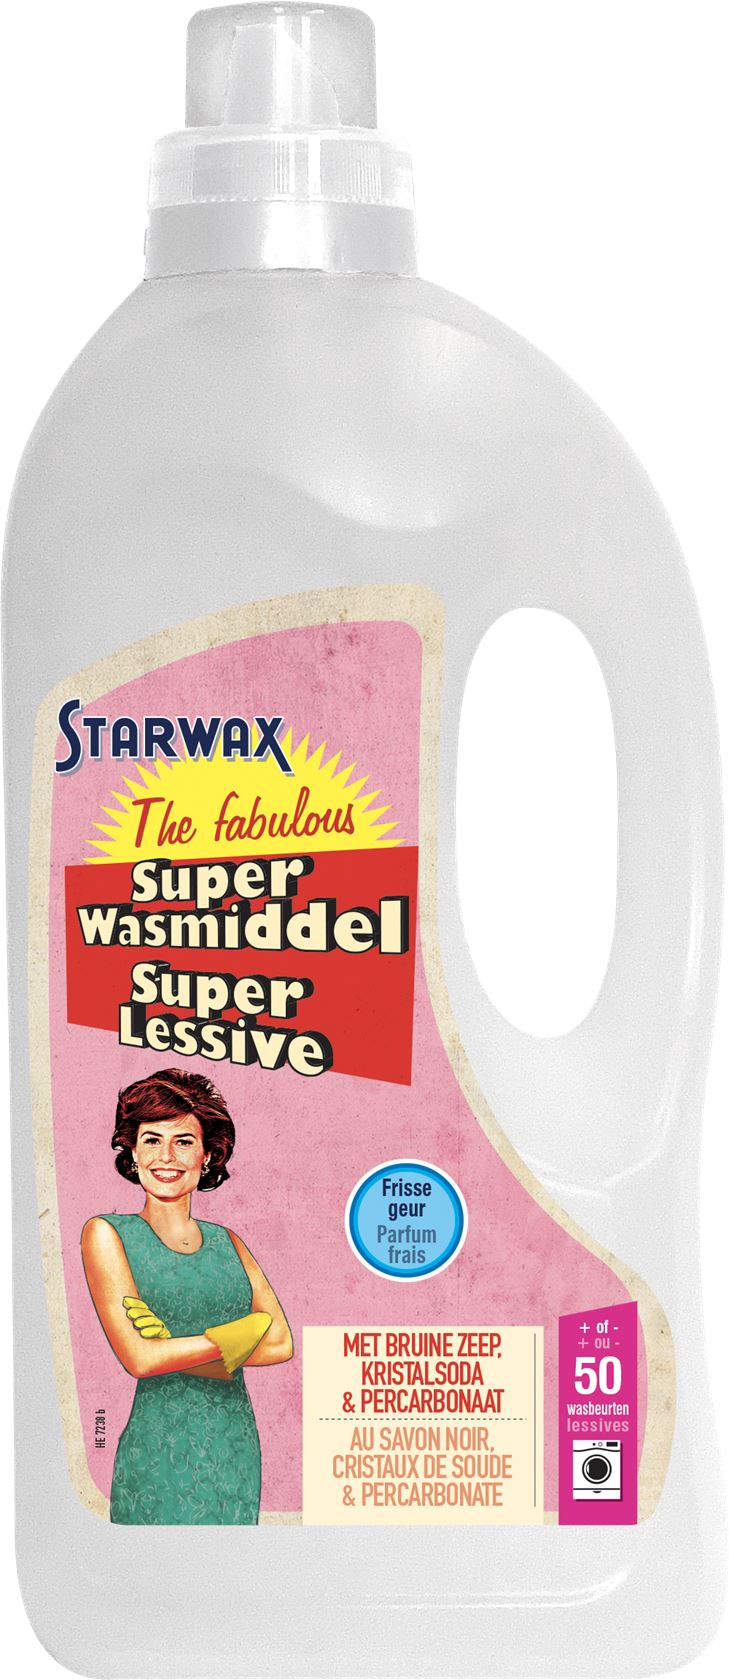 Super-wasmiddel-1-5L